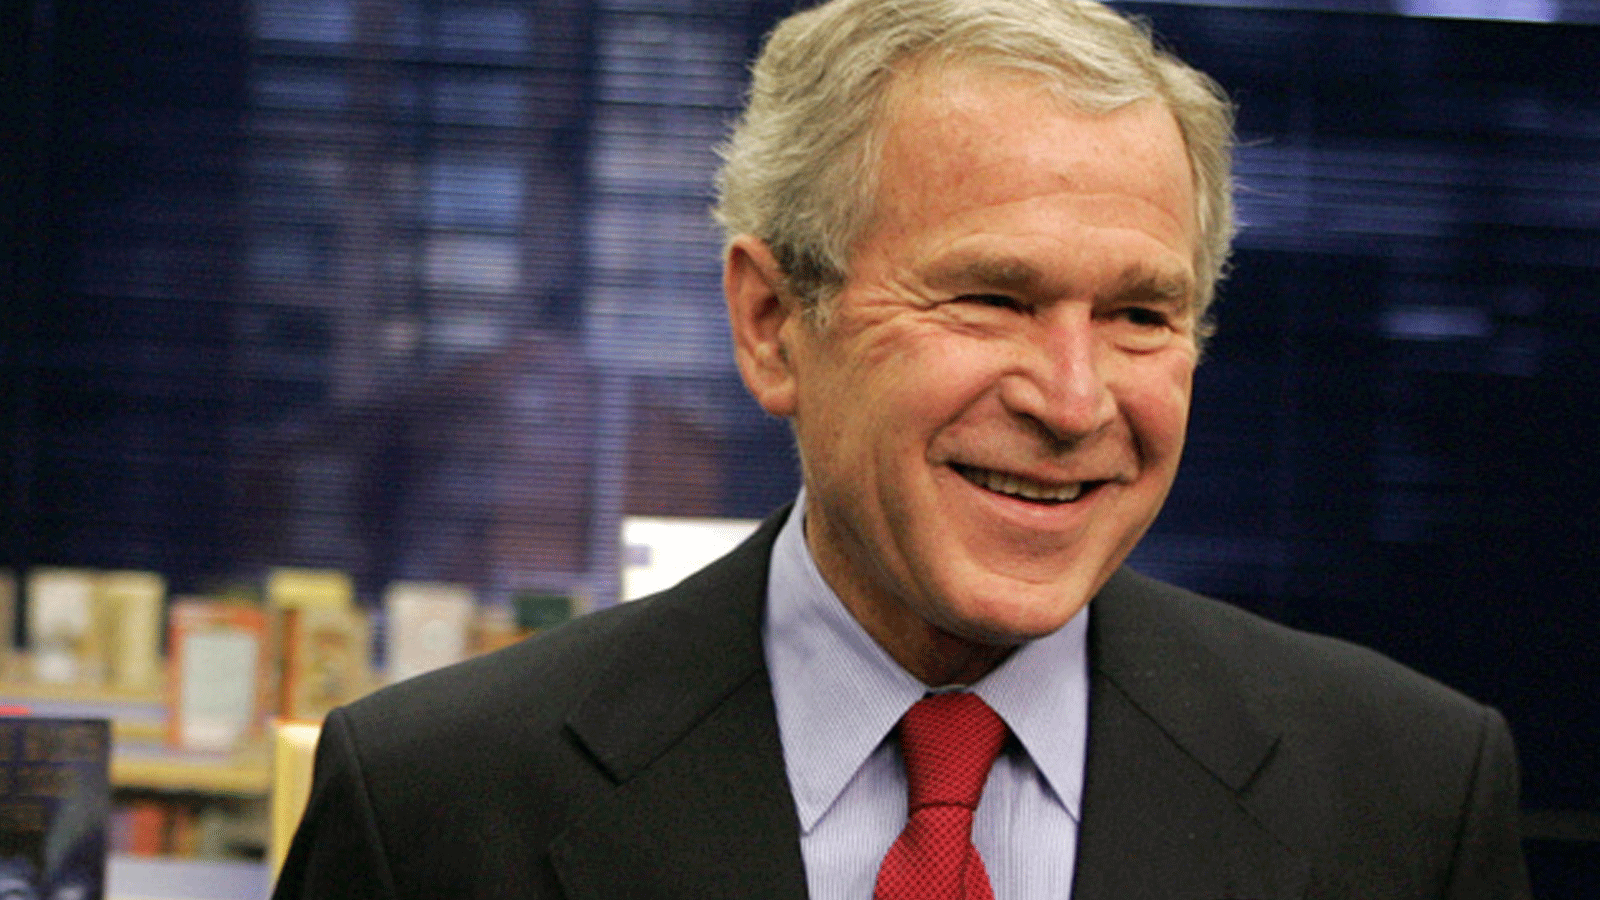 الرئيس السابق جورج دبليو بوش خلال جولة في مكتبة مارتن لوثر كينغ في واشنطن العاصمة في 21 كانون الثاني/يناير 2008 